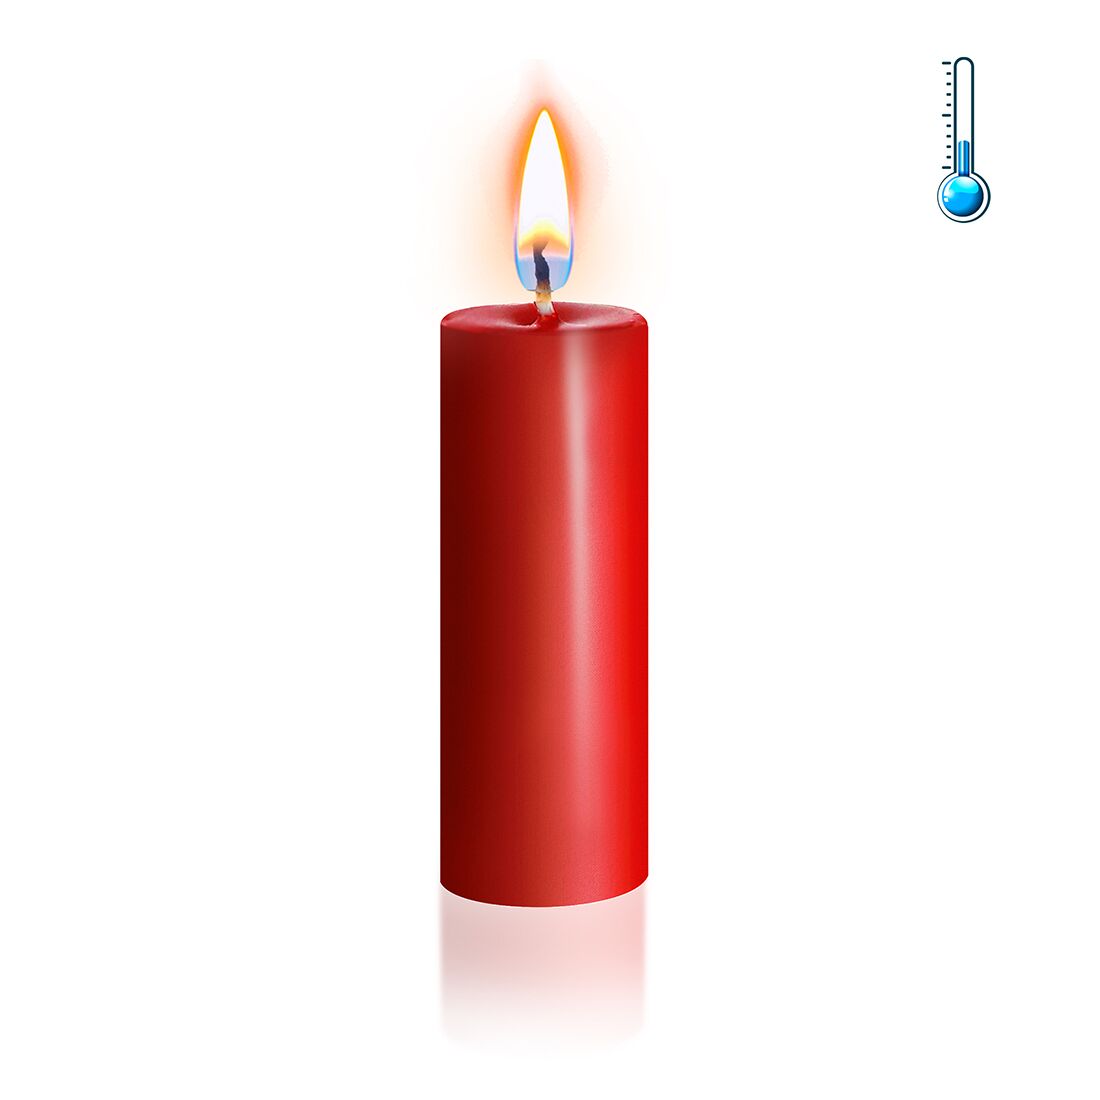 Красная свеча воско�вая Art of Sex низкотемпературная S 10 см 